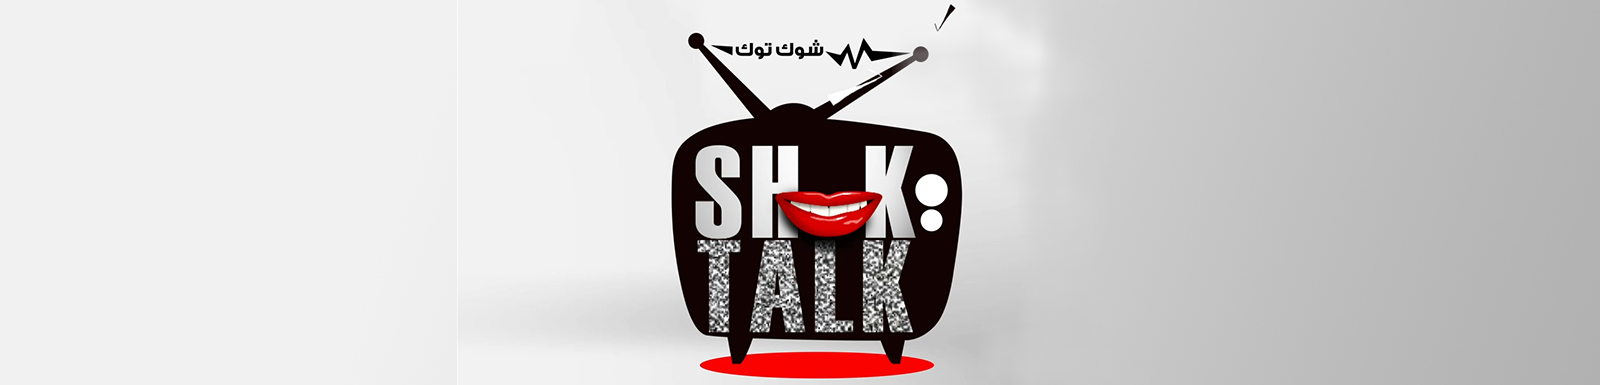 تحميل برنامج شوك توك الحلقة 16 كاملة MBC shahid شاهد نت